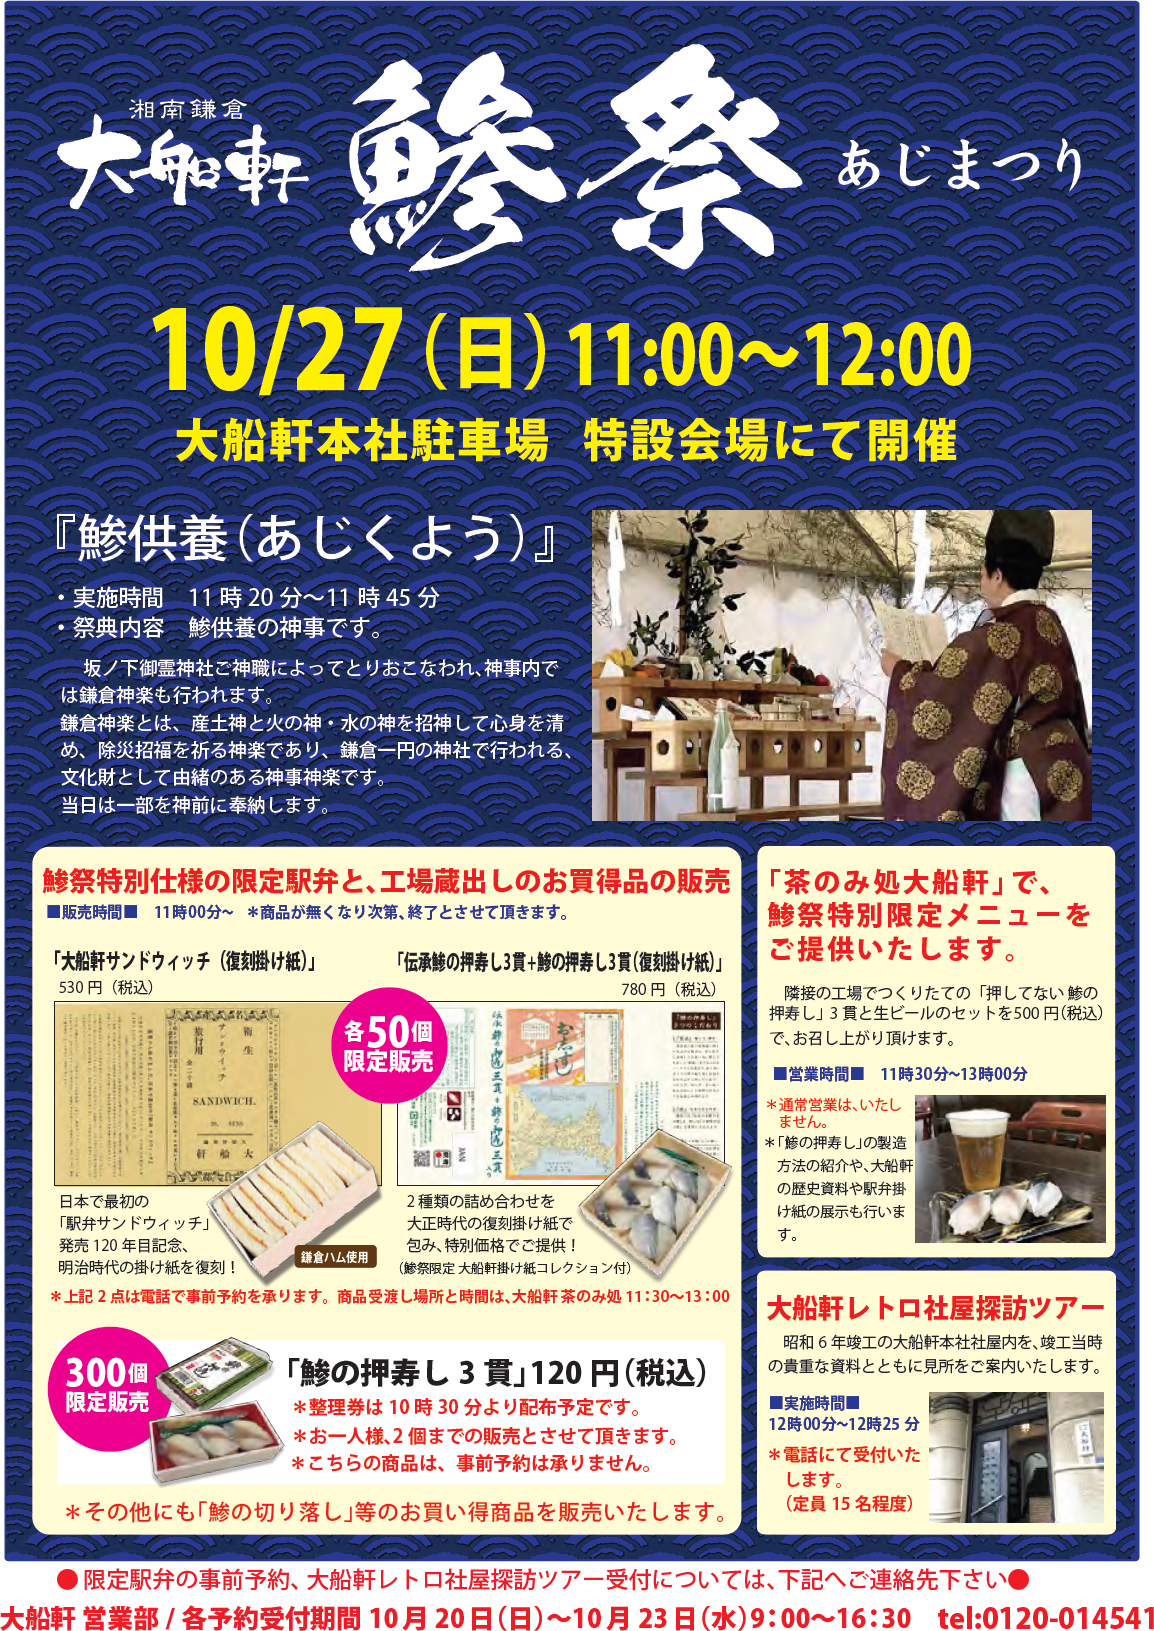 毎年恒例 鯵祭 あじまつり を 10月27日 日 に開催いたします 湘南鎌倉 大船軒